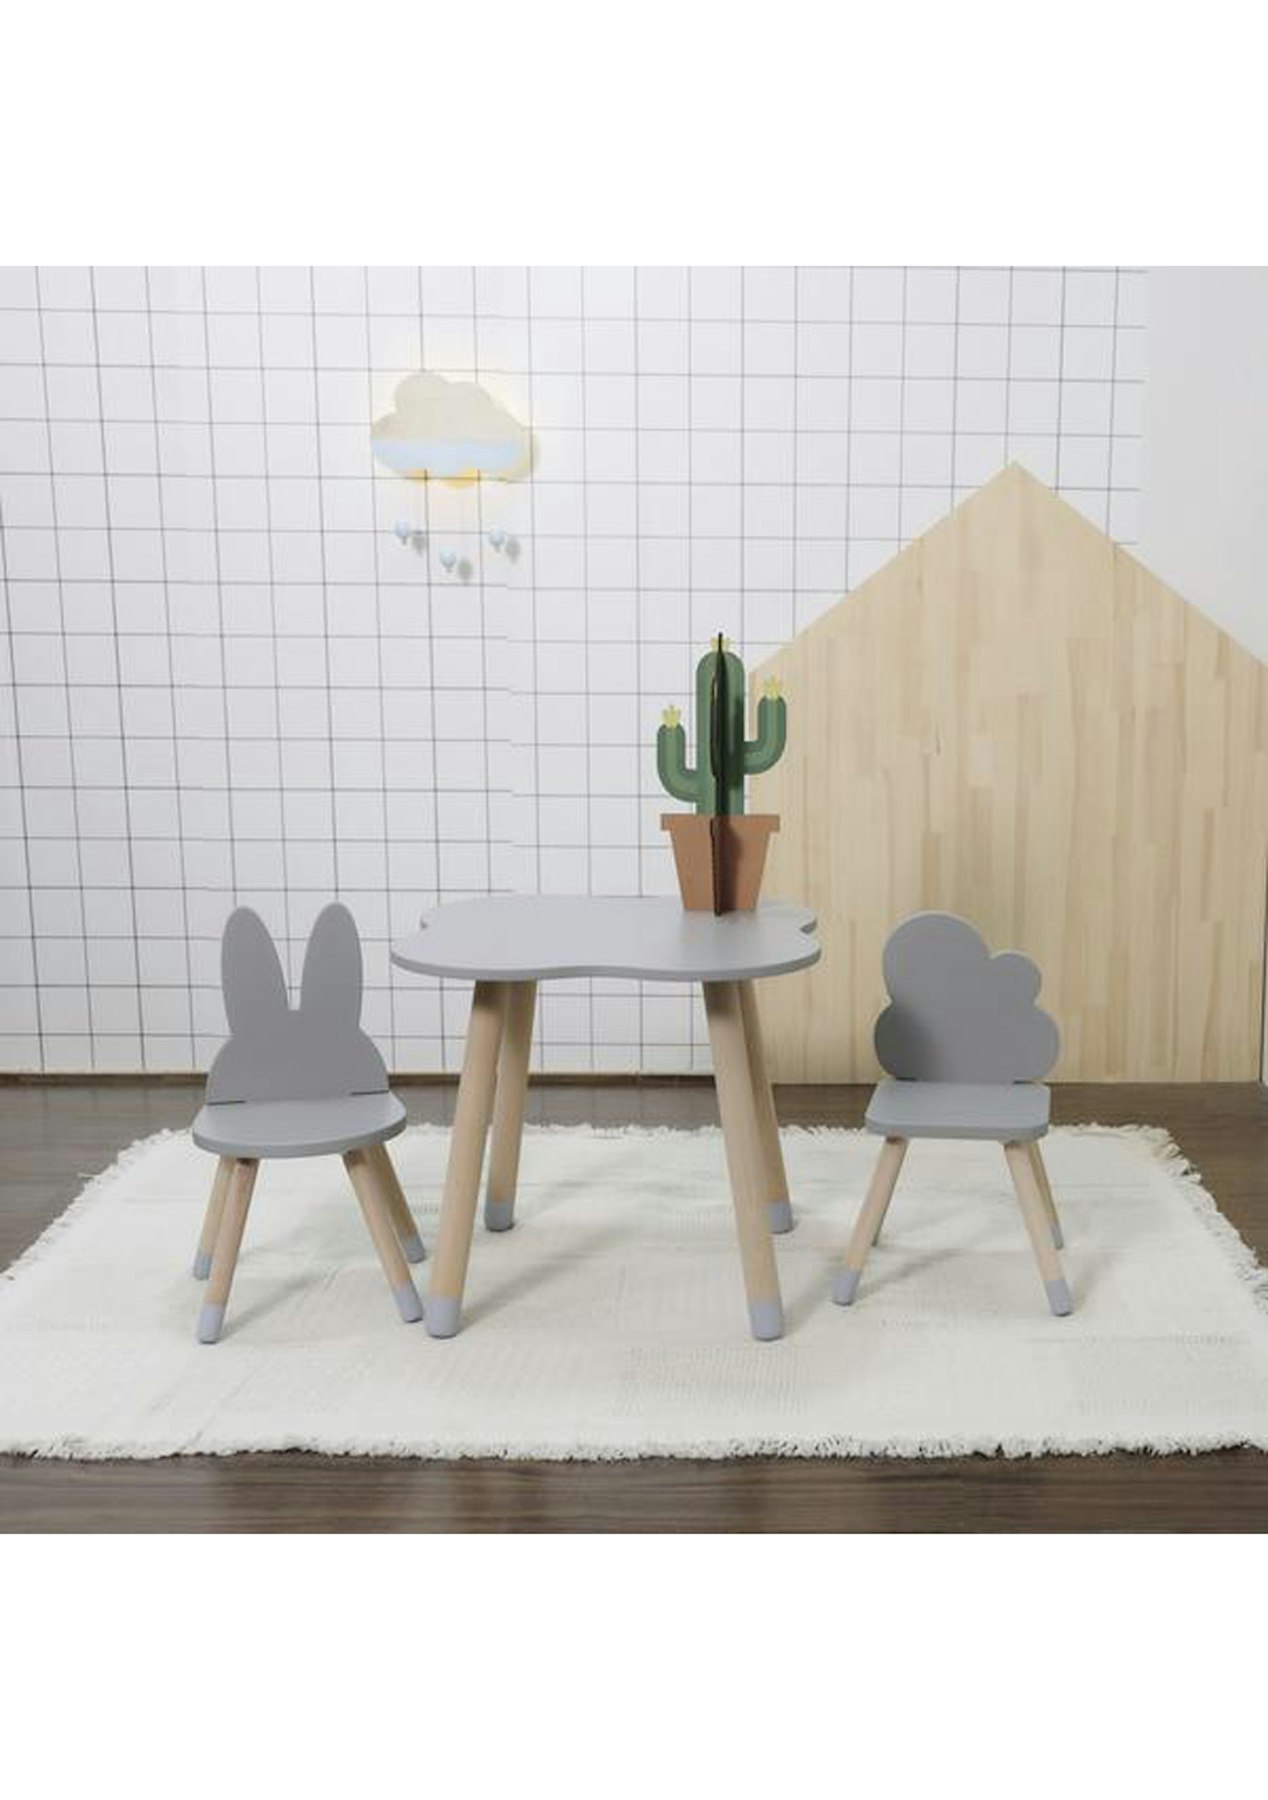 Mini Me Grey Fun Wooden Kids Table Chairs Mini Me Kids